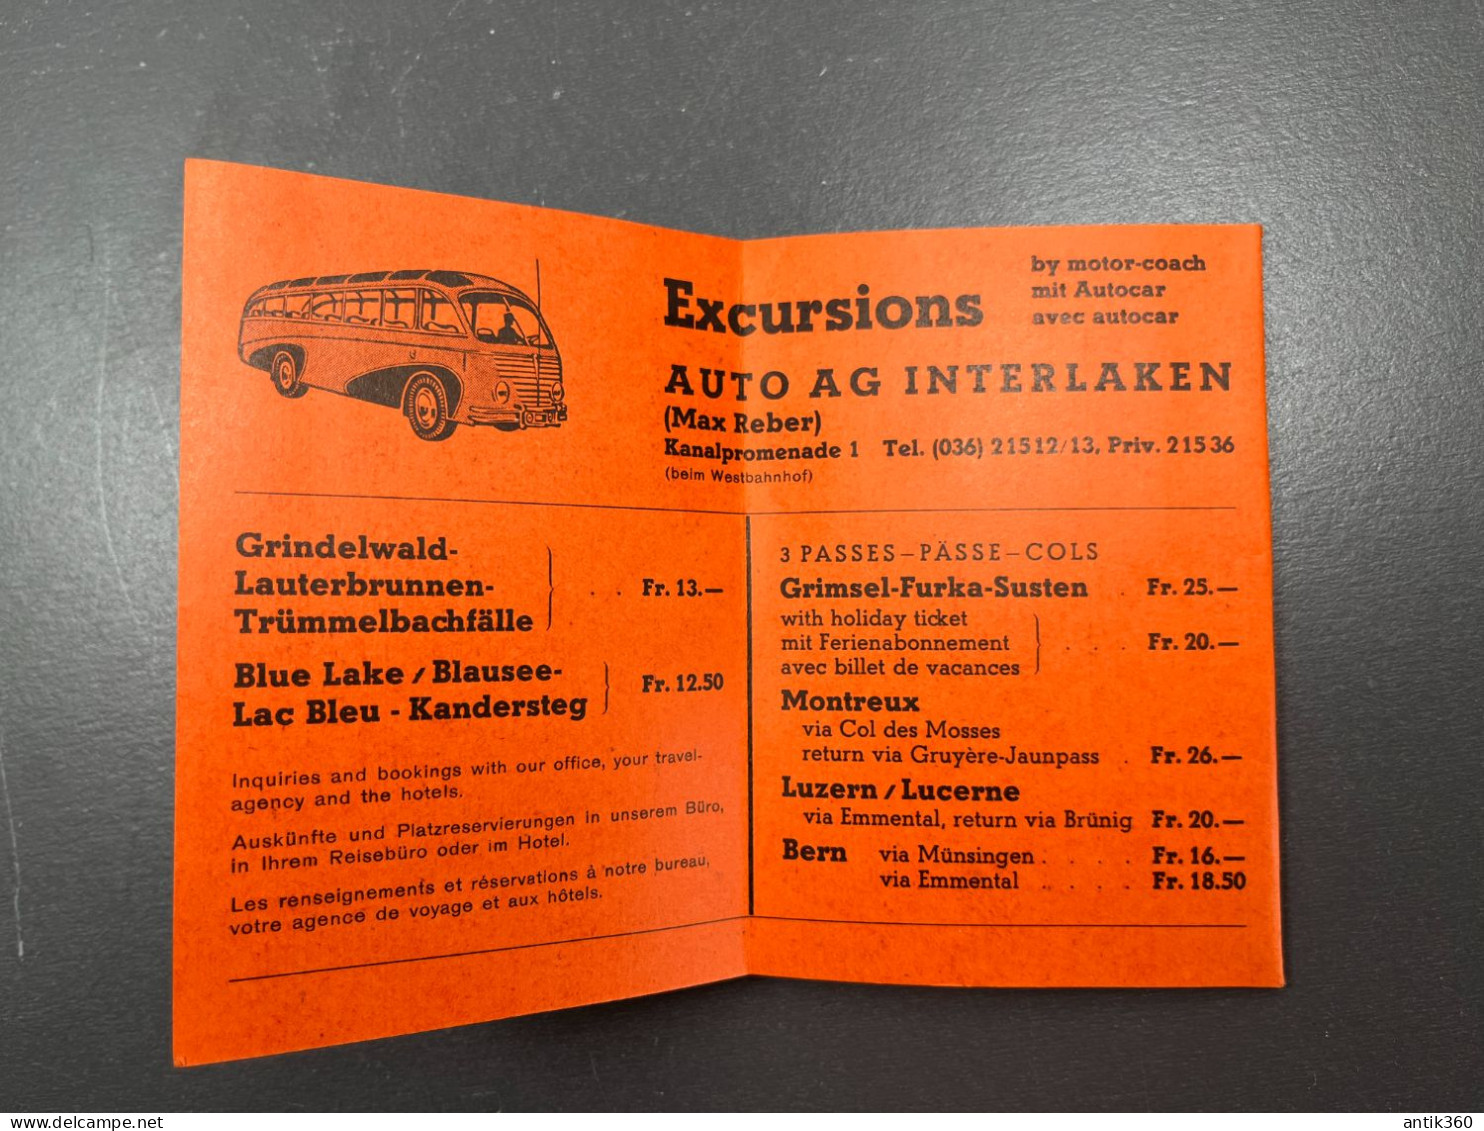 Ancienne Brochure Carte Touristique Kurtkarte 1962 INTERLAKEN Suisse - Dépliants Touristiques